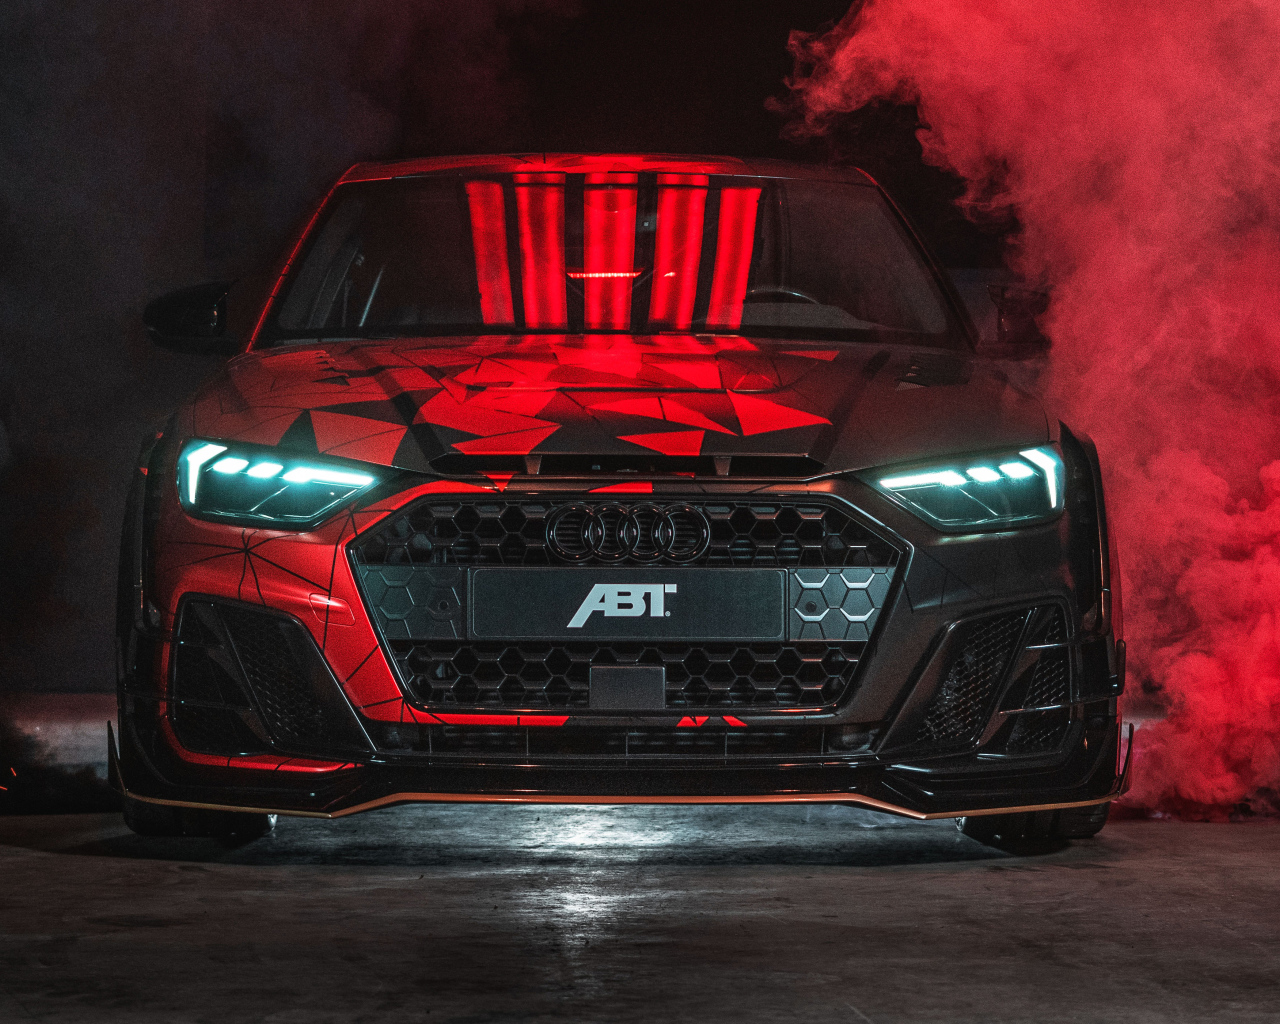 Автомобиль Audi A1 ABT Sportsline, 2019 года в красном дыму